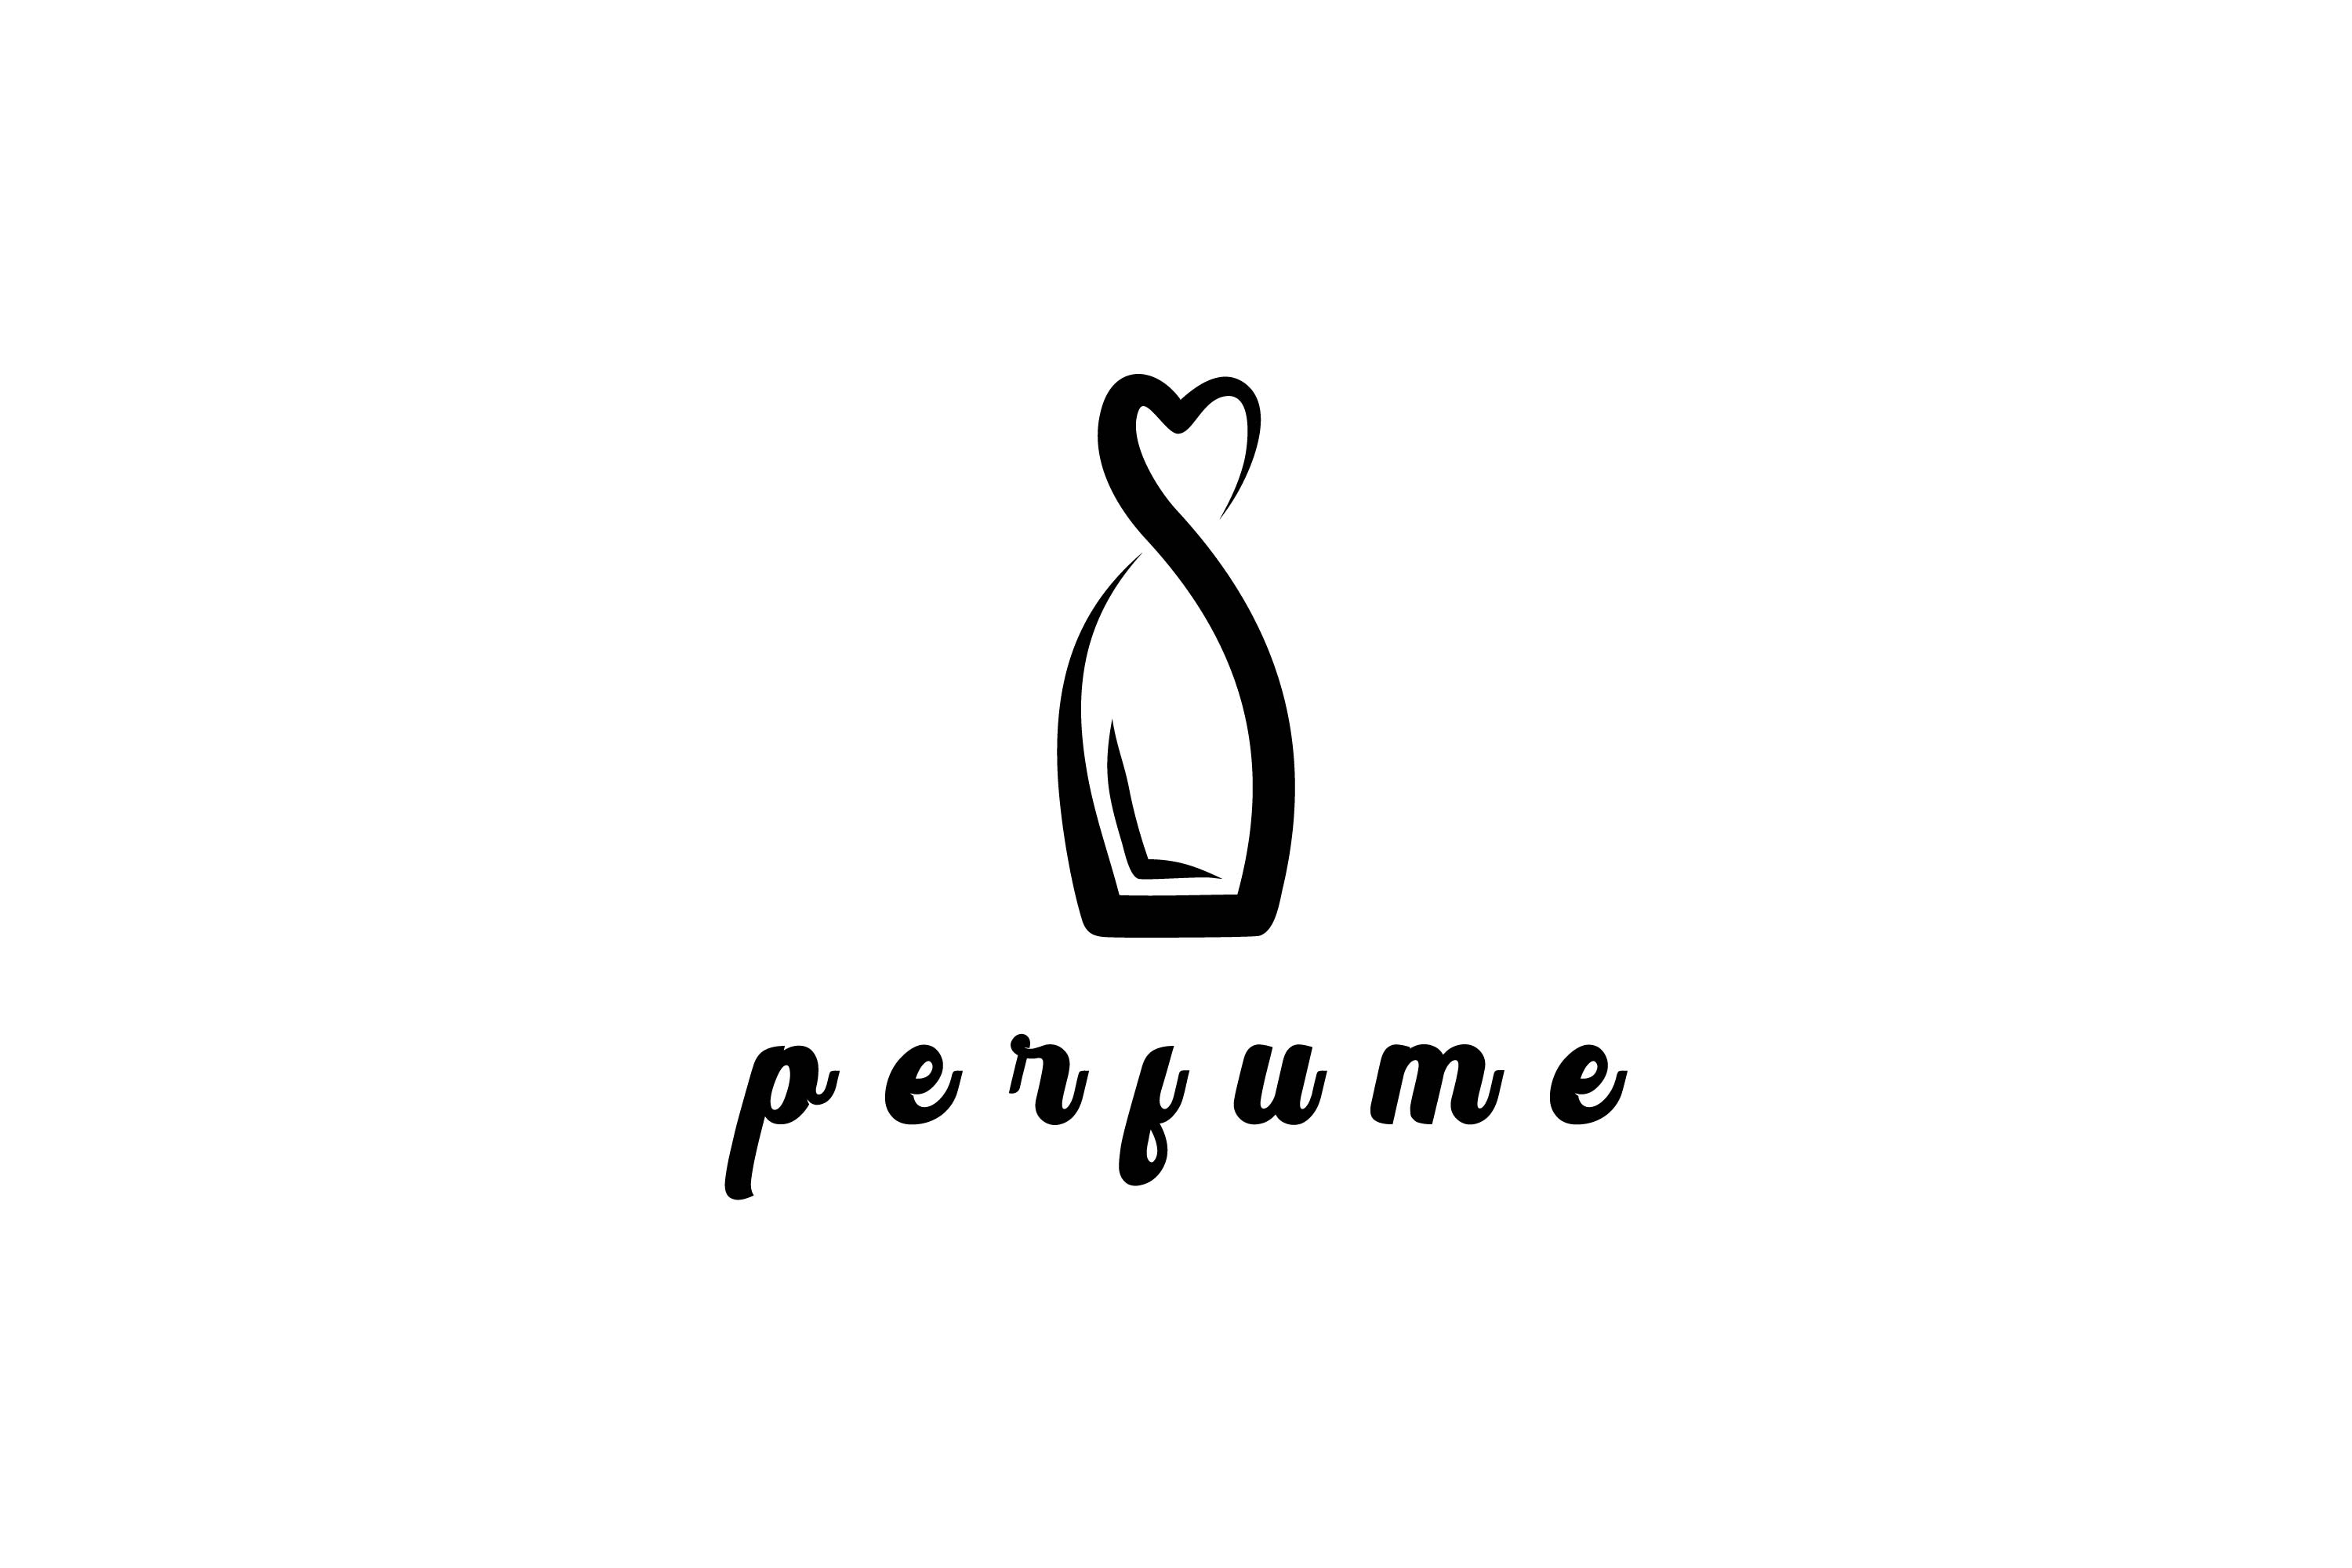 perfume logo images